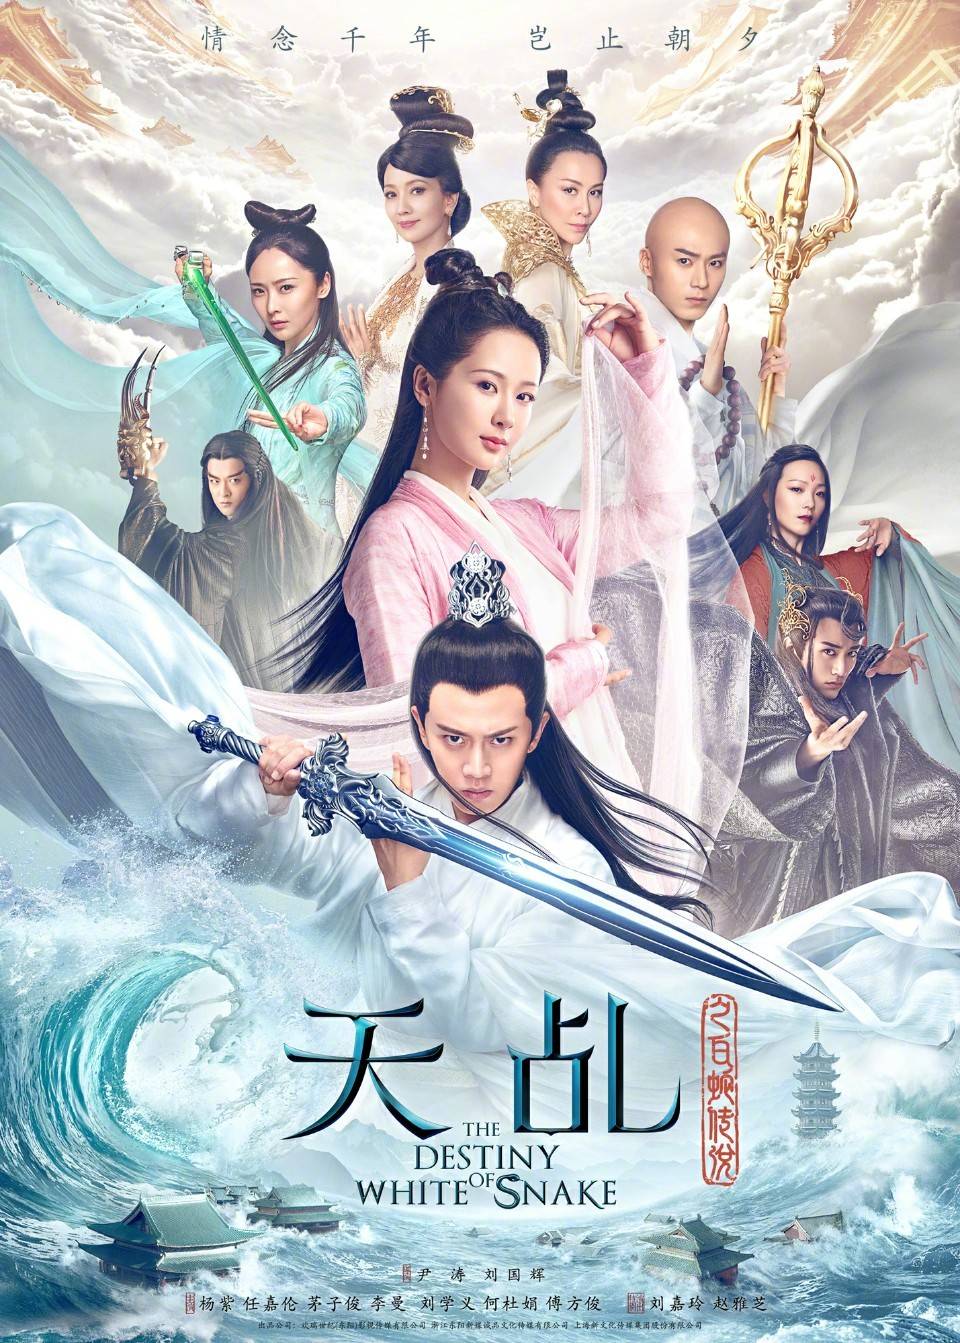 《天乩之白蛇传说》是尹涛,刘国辉执导的青春神话剧,由杨紫,任嘉伦